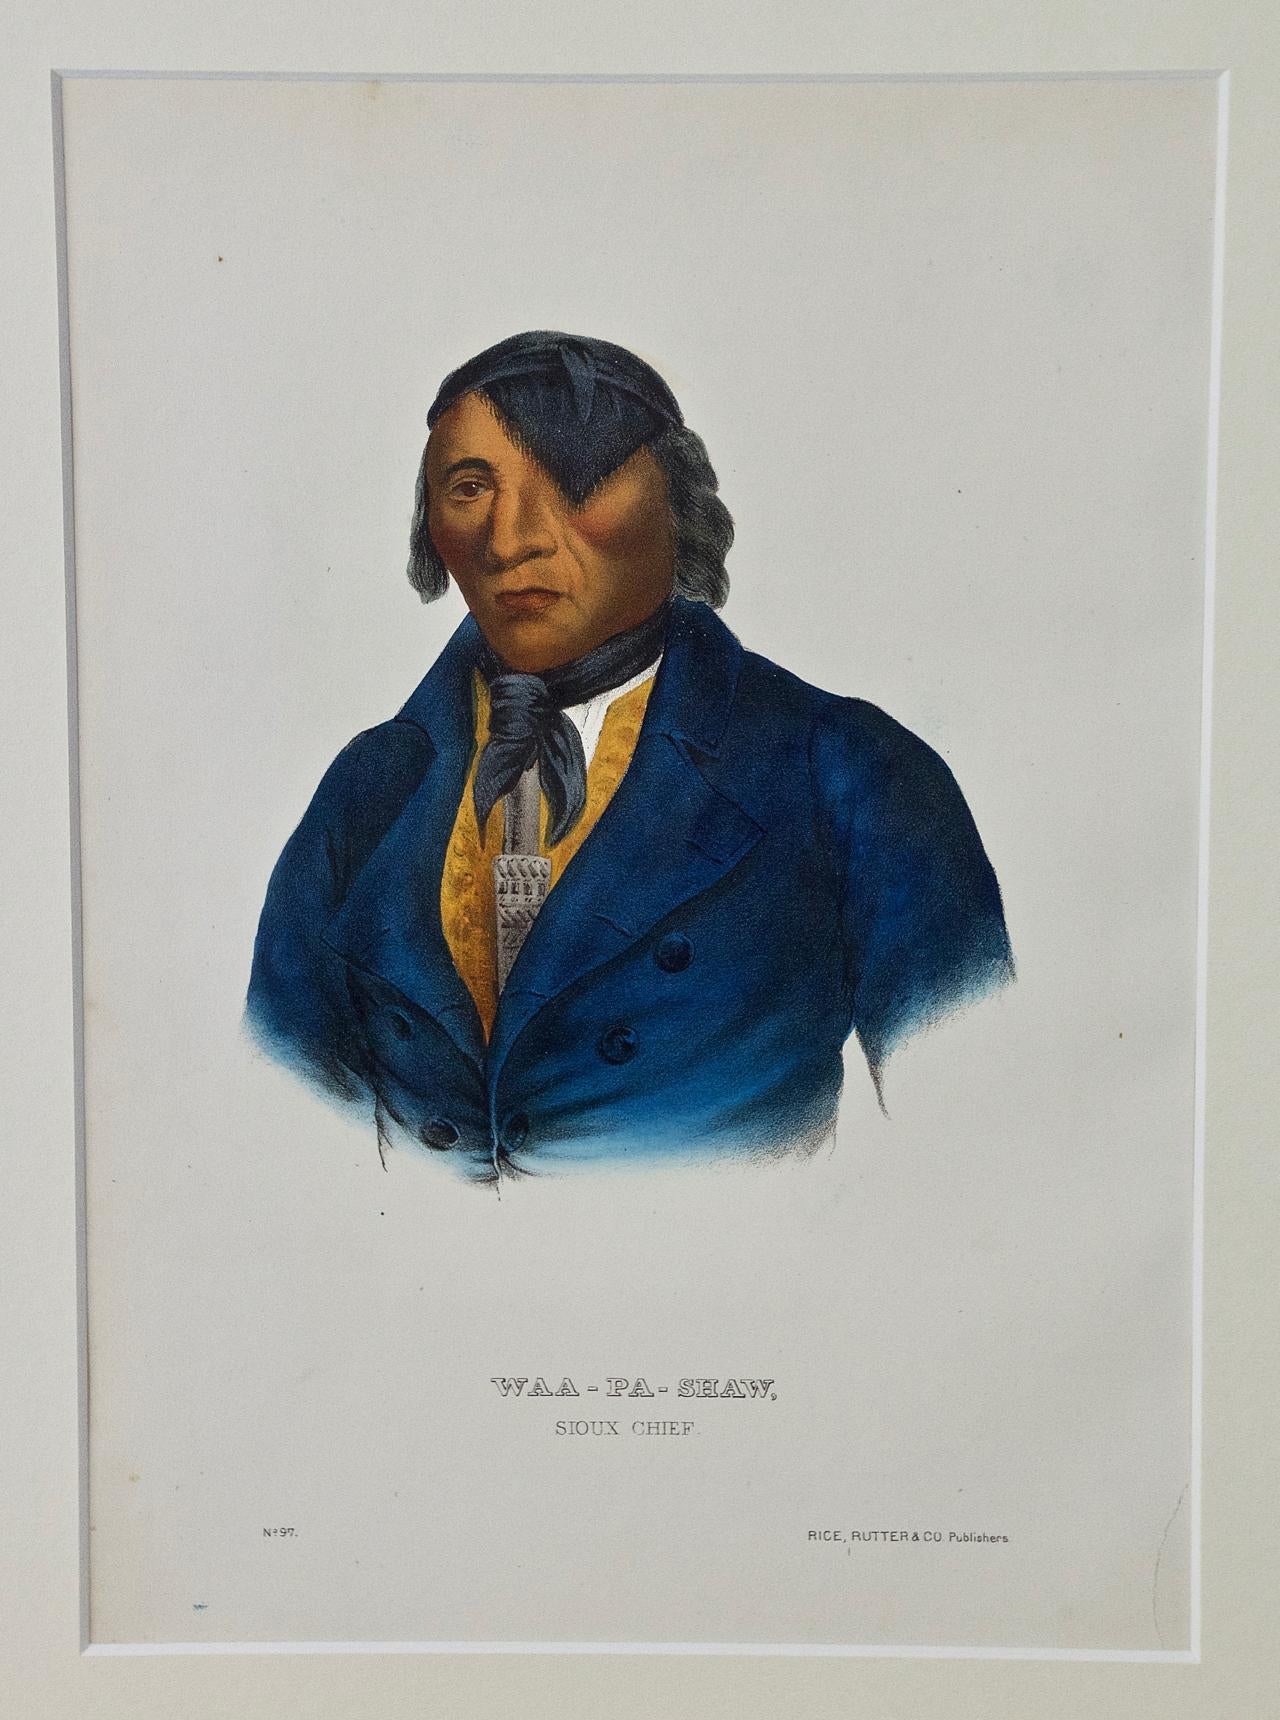 Il s'agit d'une gravure originale du 19e siècle, coloriée à la main, de McKenney et Hall, représentant un Amérindien et intitulée "Waa-Pa-Shaw, Sioux Chief, No. 97", publiée par Rice, Rutter & Co. en 1865.

Cette gravure originale de McKenney et